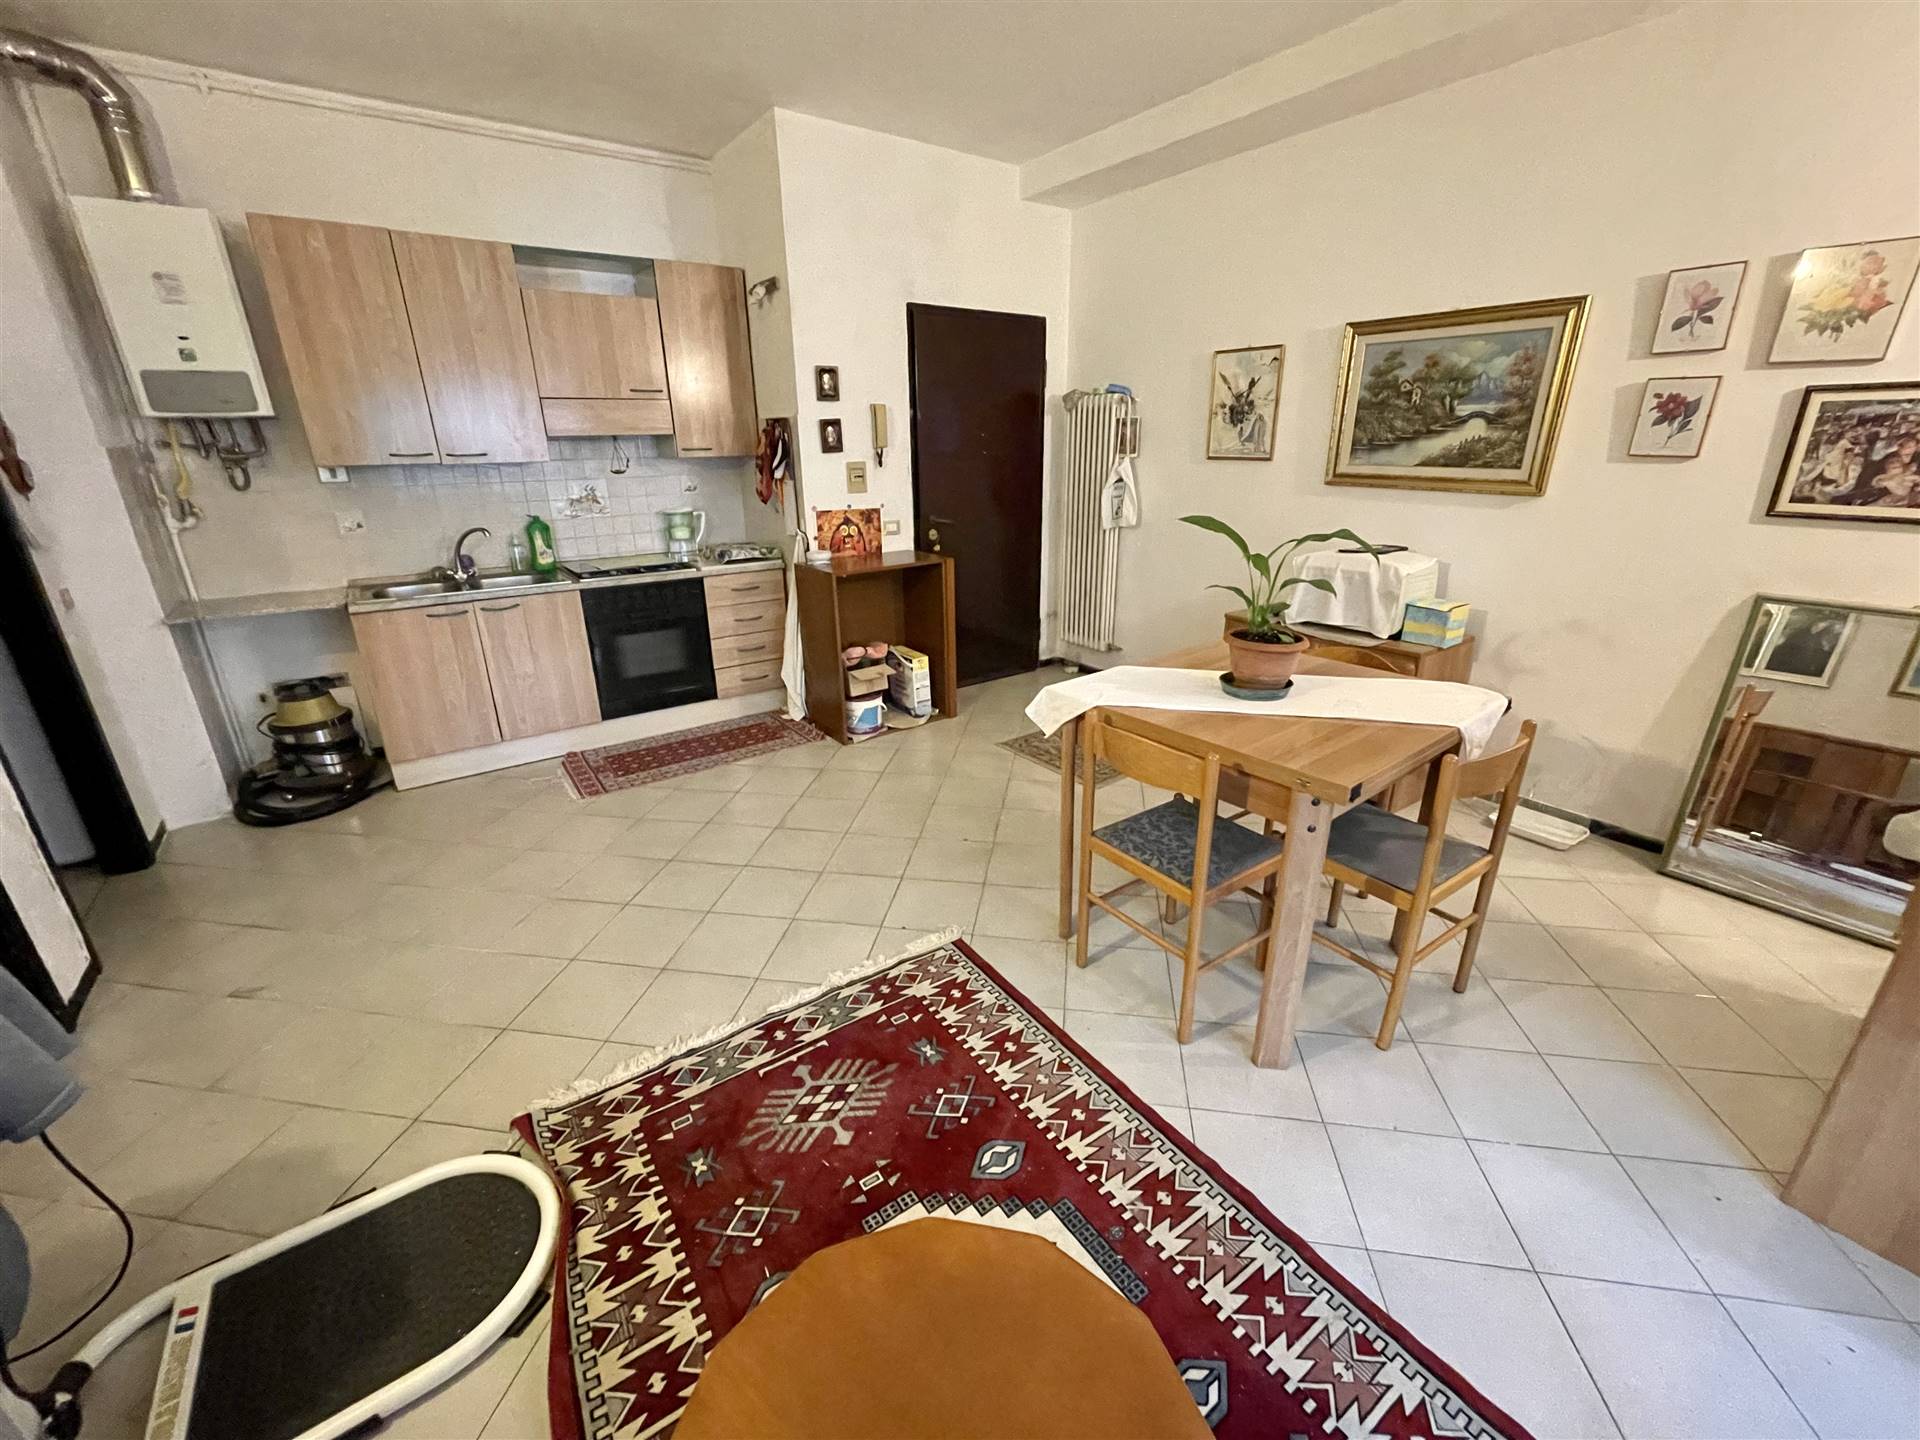 Appartamento in vendita a Borgo Virgilio, 2 locali, zona Località: CERESE, prezzo € 38.000 | CambioCasa.it